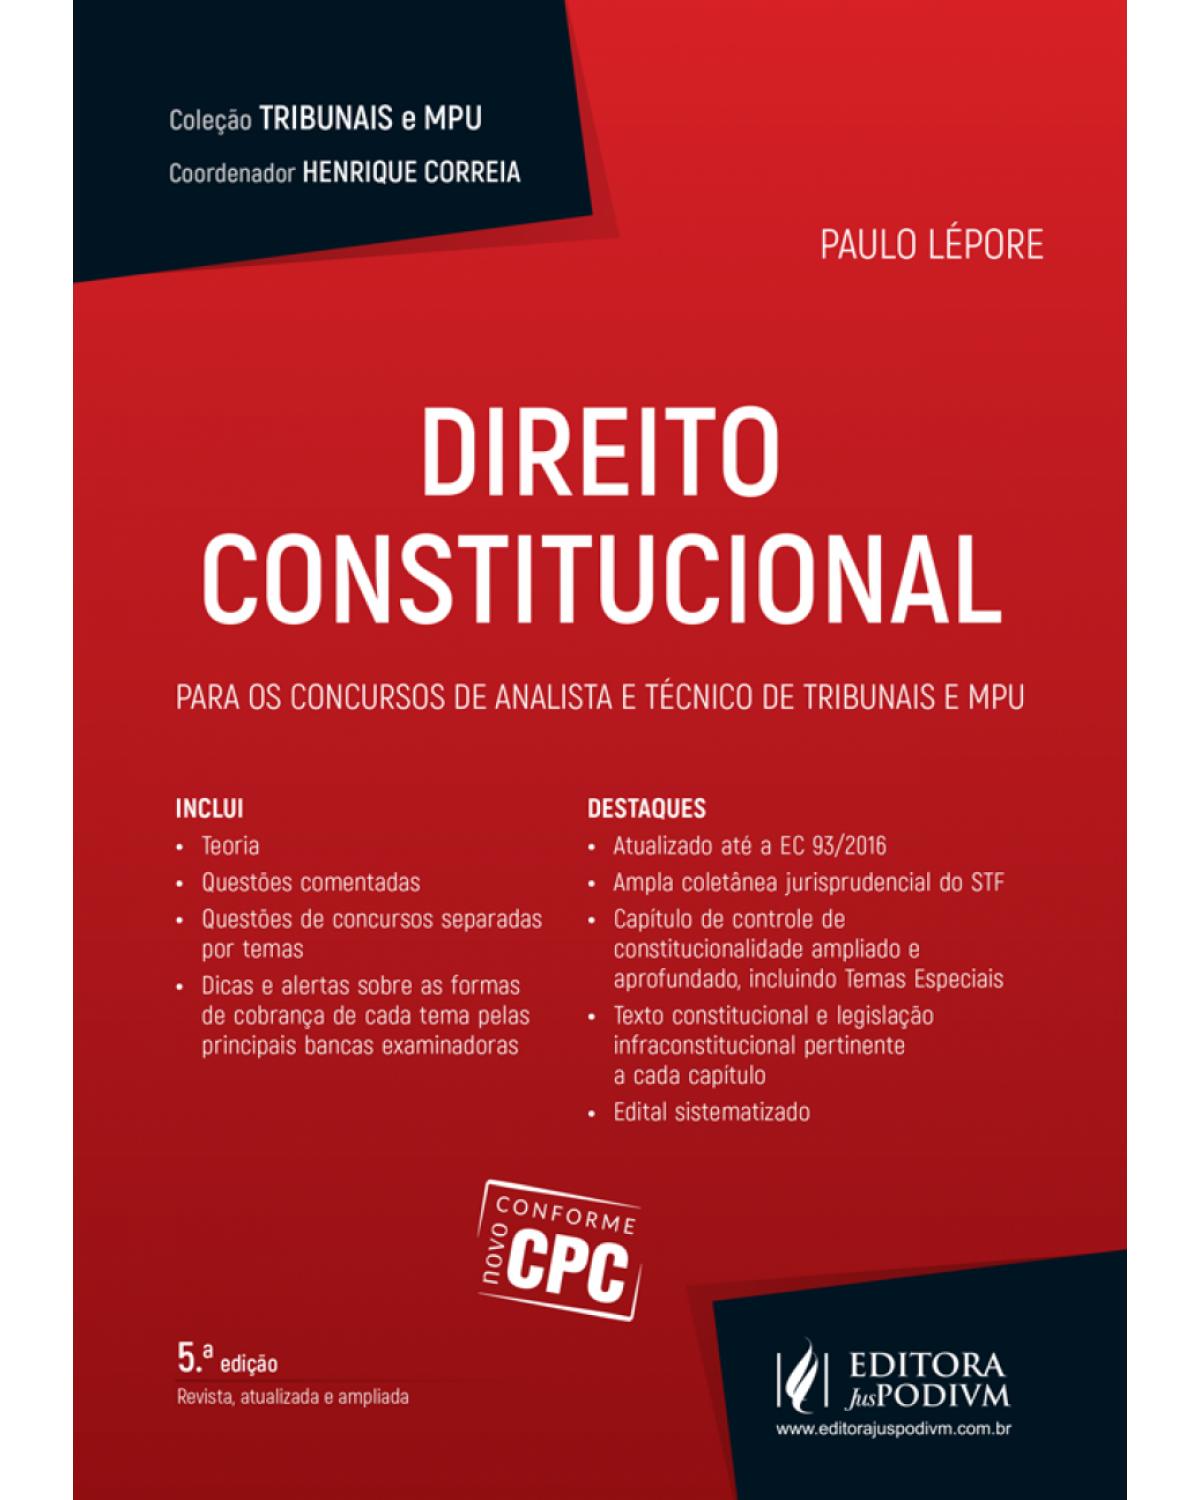 Direito constitucional - Para concursos de analista e técnico de tribunais e MPU - 5ª Edição | 2017